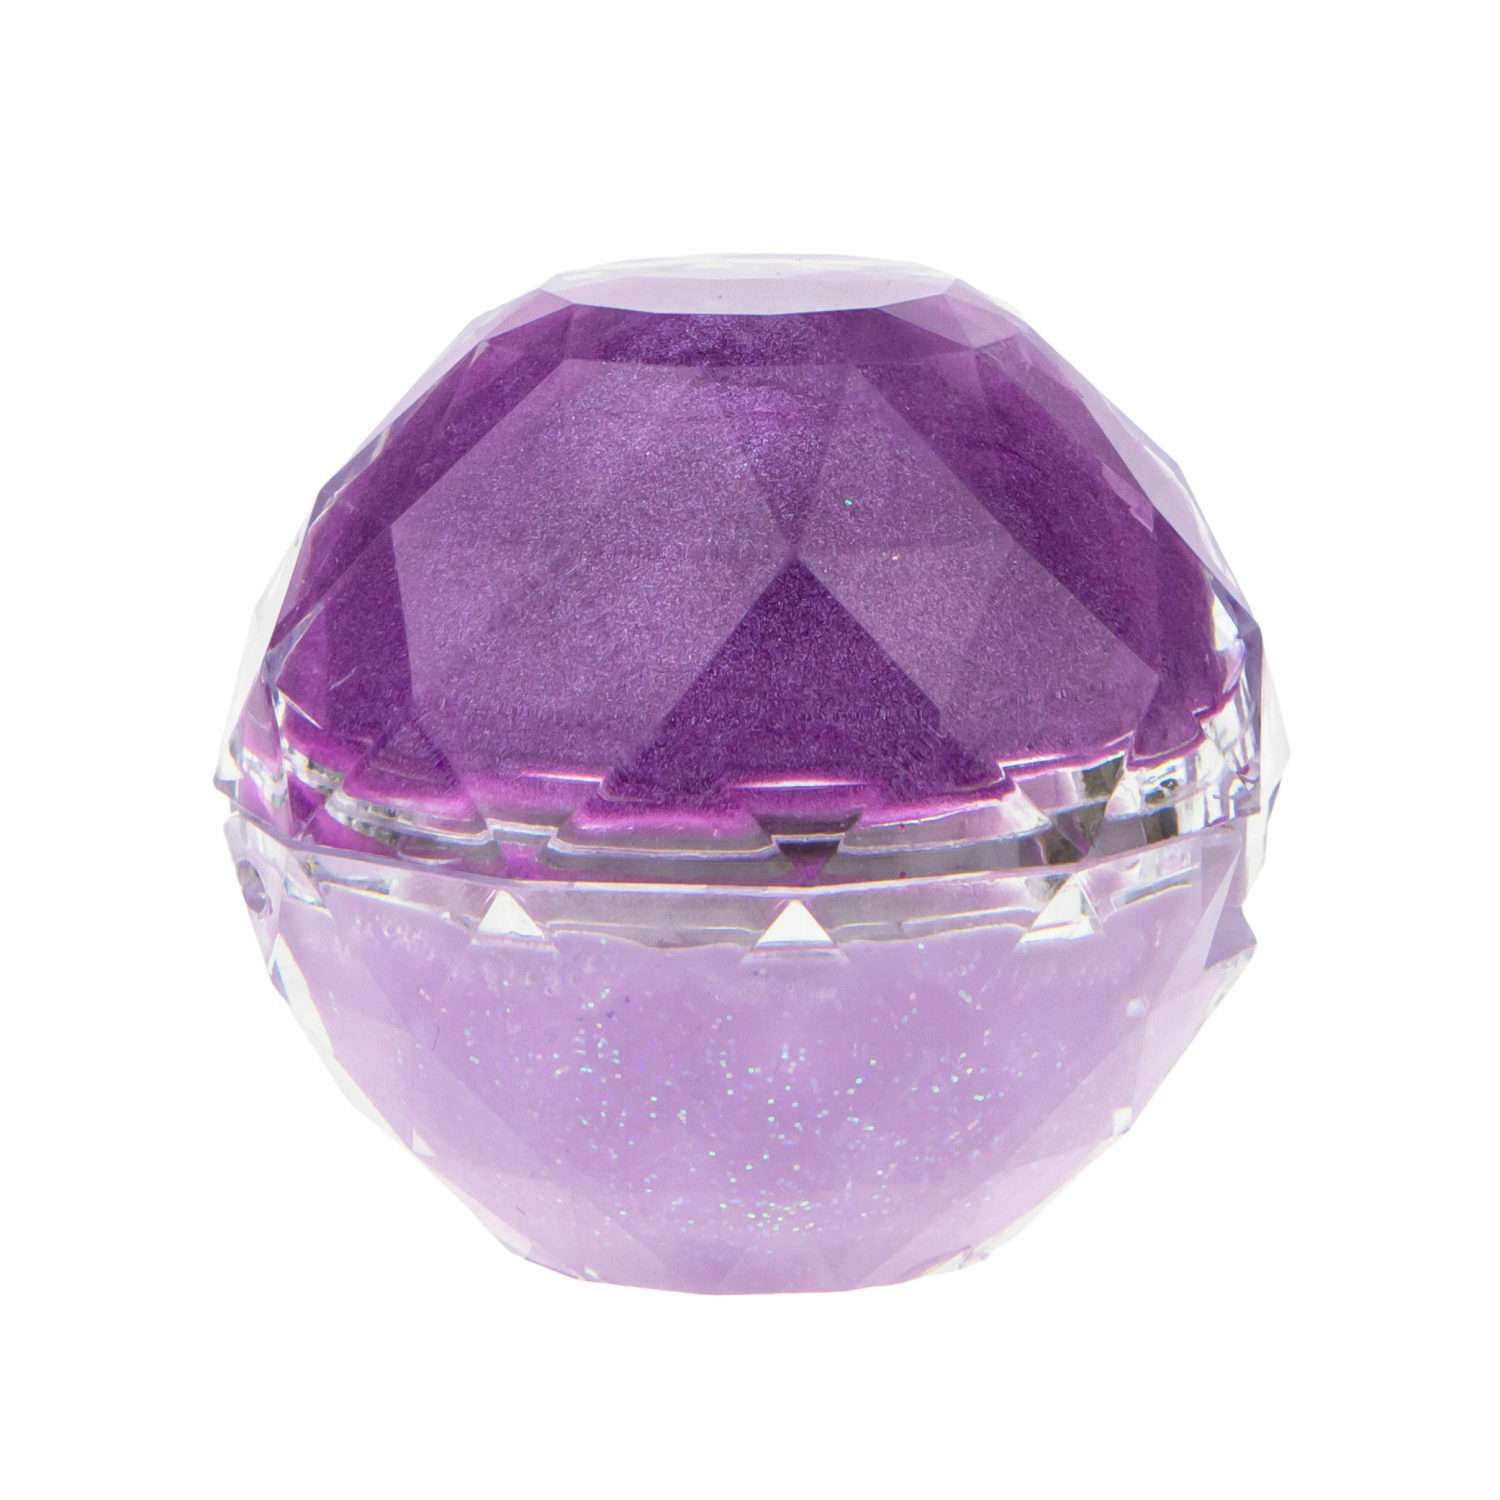 Блеск для губ Lukky Даймонд 2 в 1 цвет фиолетовый и нежно-сиреневый - фото 4